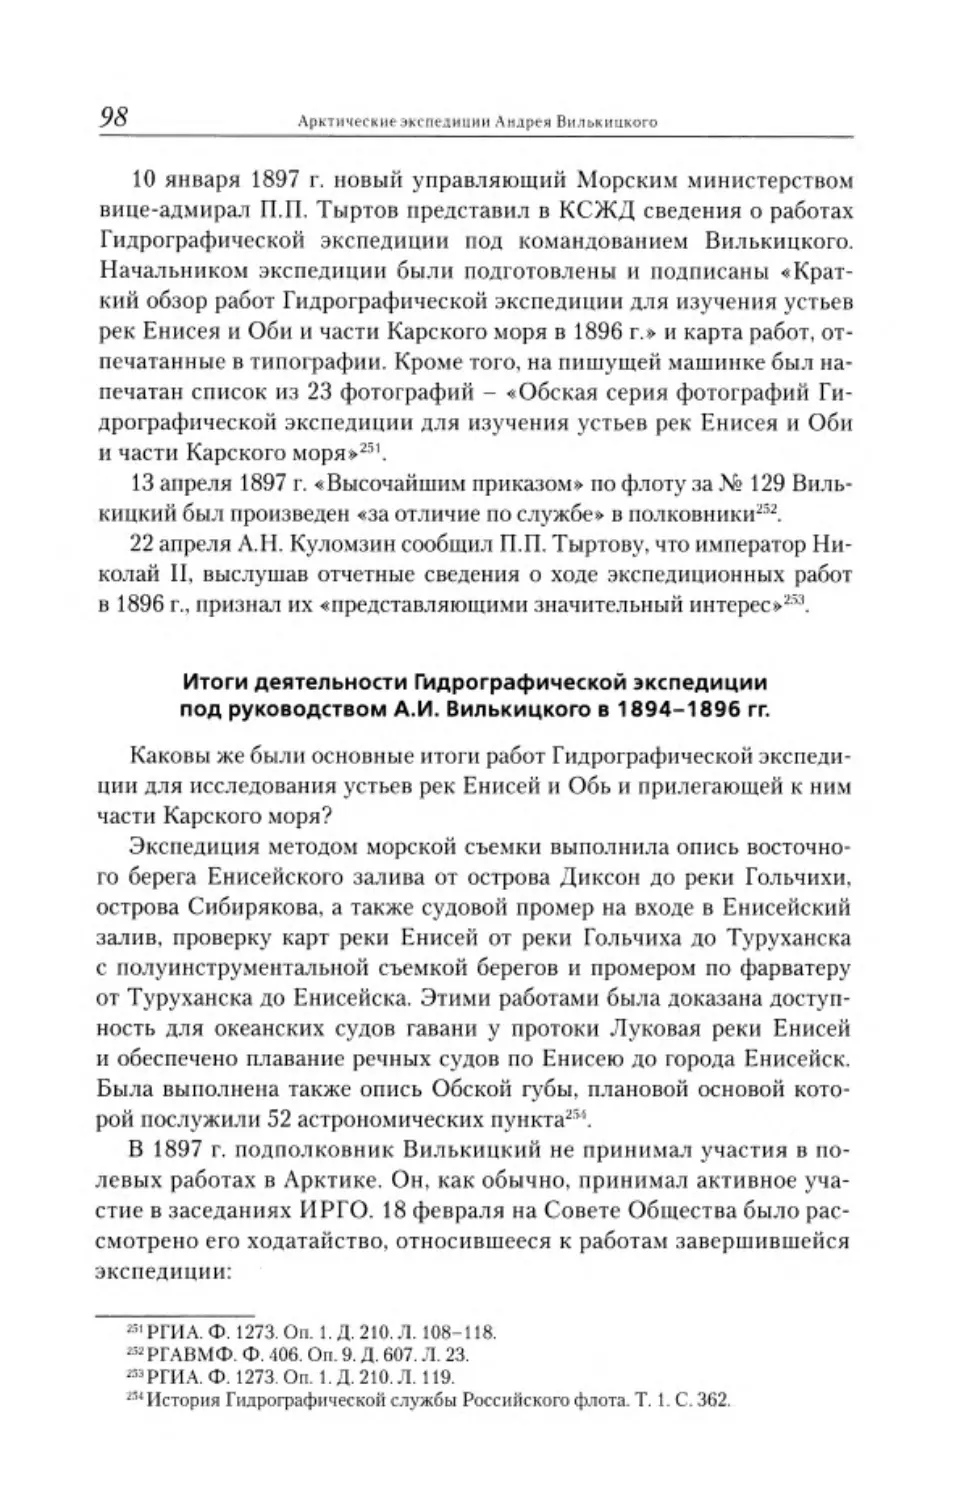 ﻿Итоги деятельности Гидрографической экспедиции под руководством А.И. Вилькицкого в 1894-1896 гг